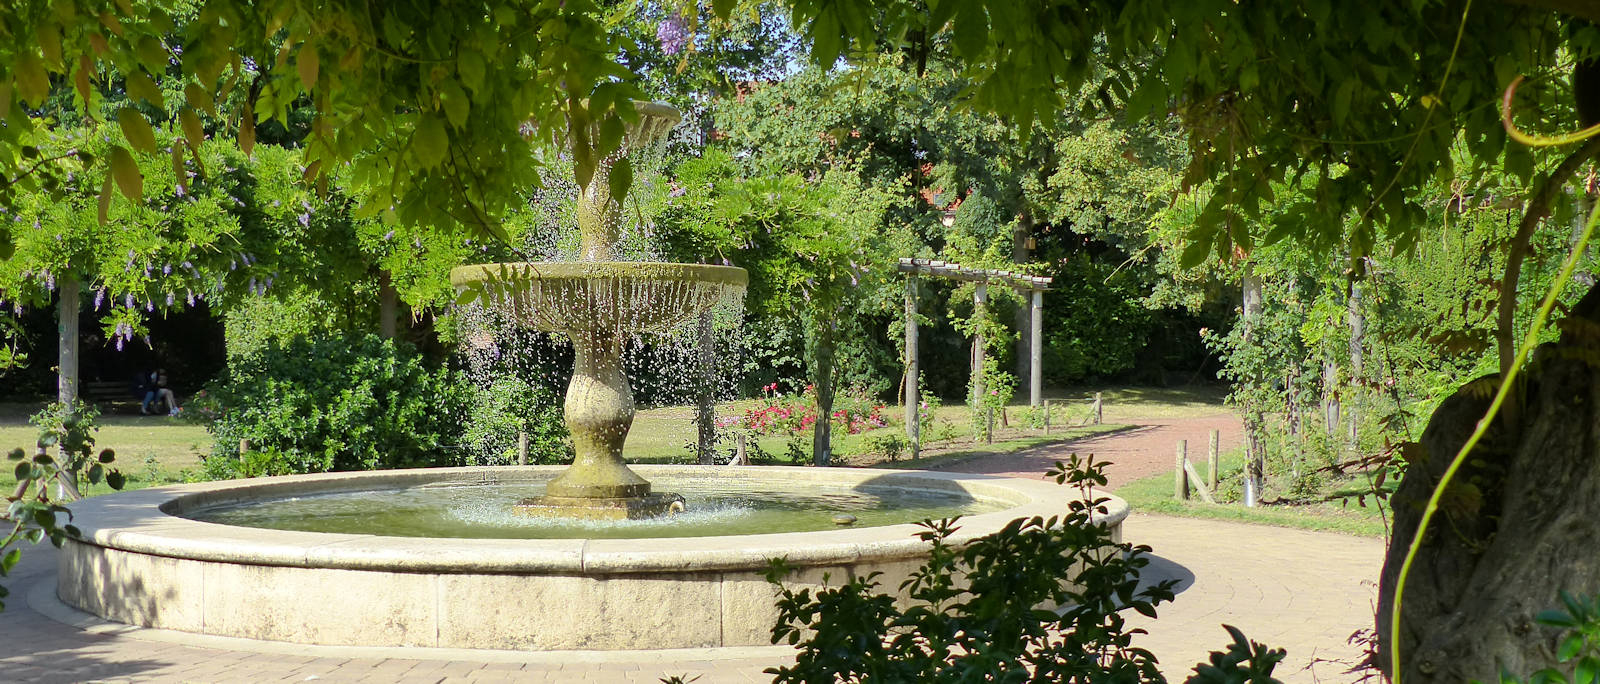 Jardin Botanique, Tourcoing | Tourcoing Balade à Horaires Jardin Botanique Tropical Lisbonne Tourisme